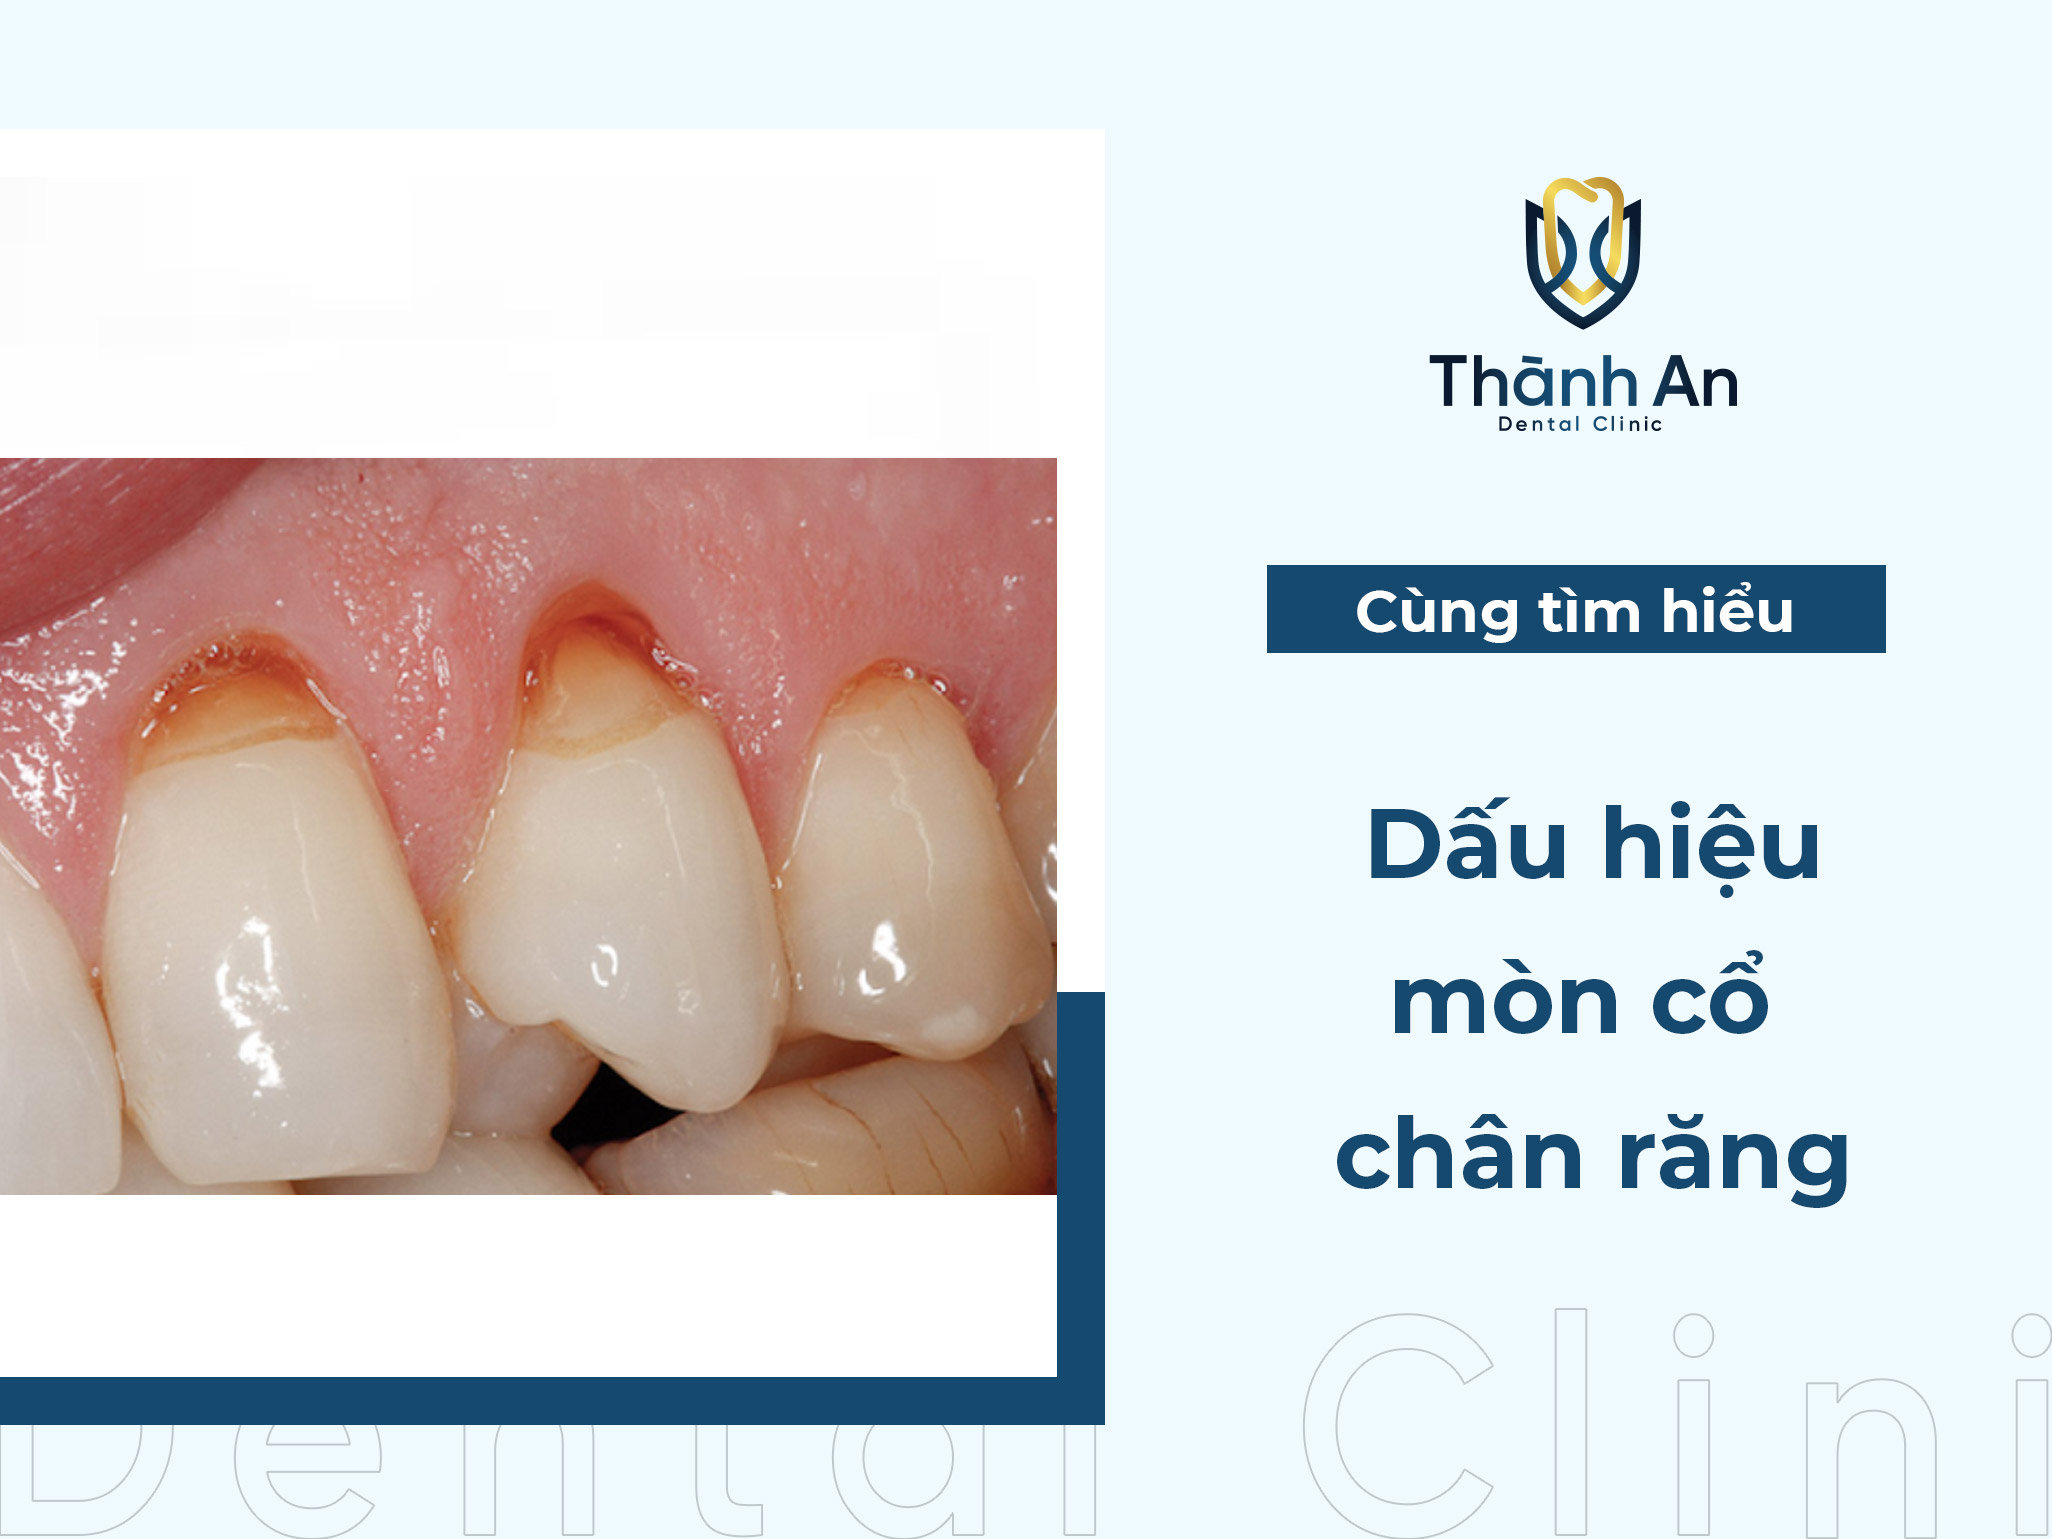 Mòn cổ chân răng: Nguyên nhân, dấu hiệu và phương pháp điều trị